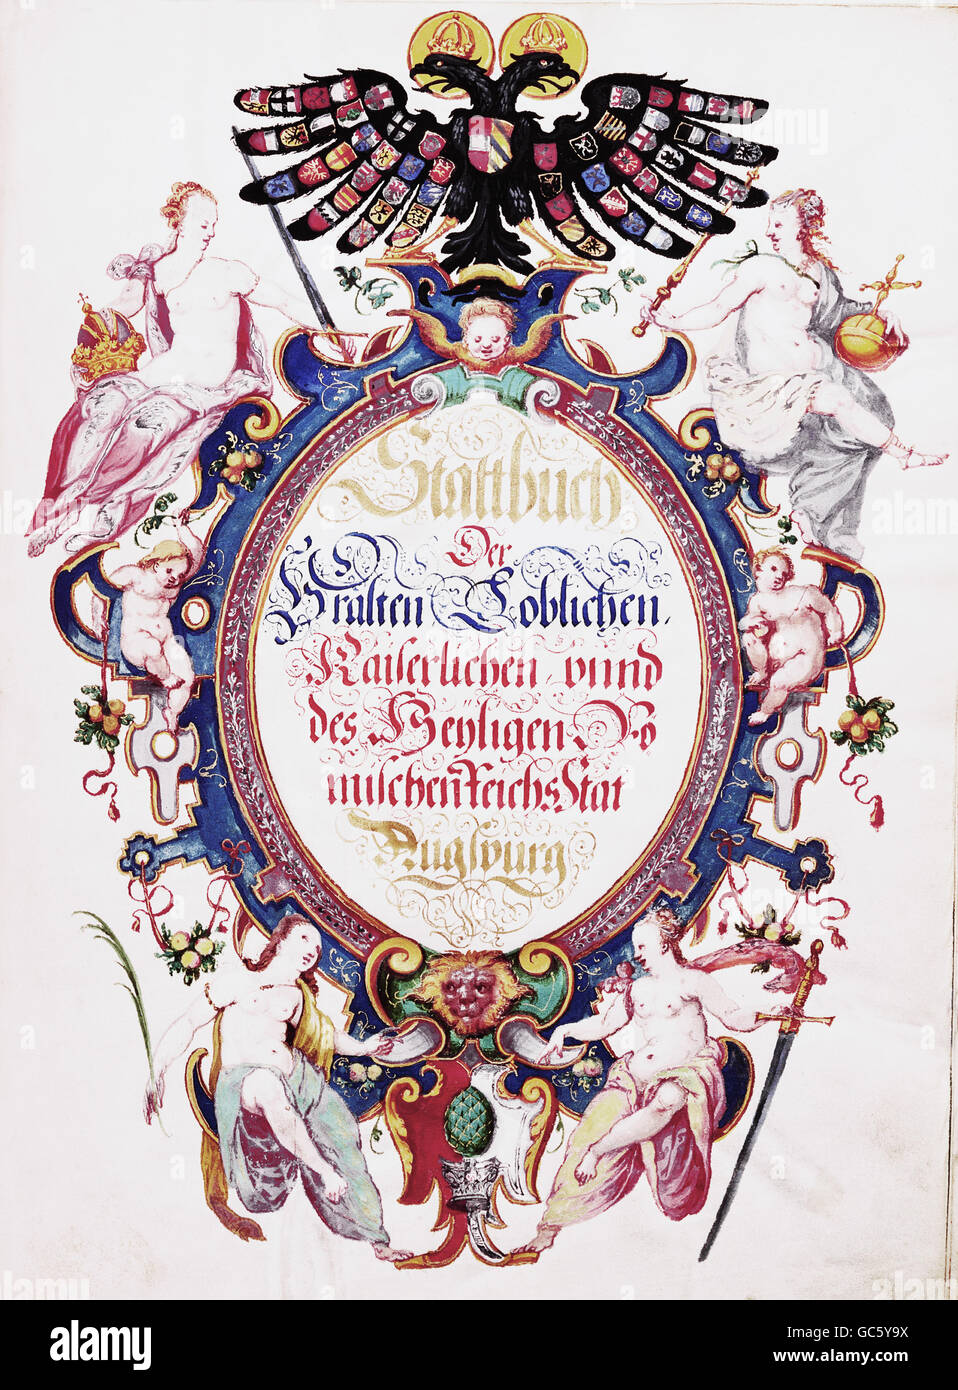 Documents, Journal de la Cité libre impériale d'Augsbourg, écrit par Hans Lutzenberger, 1583, droits additionnels-Clearences-non disponible Banque D'Images